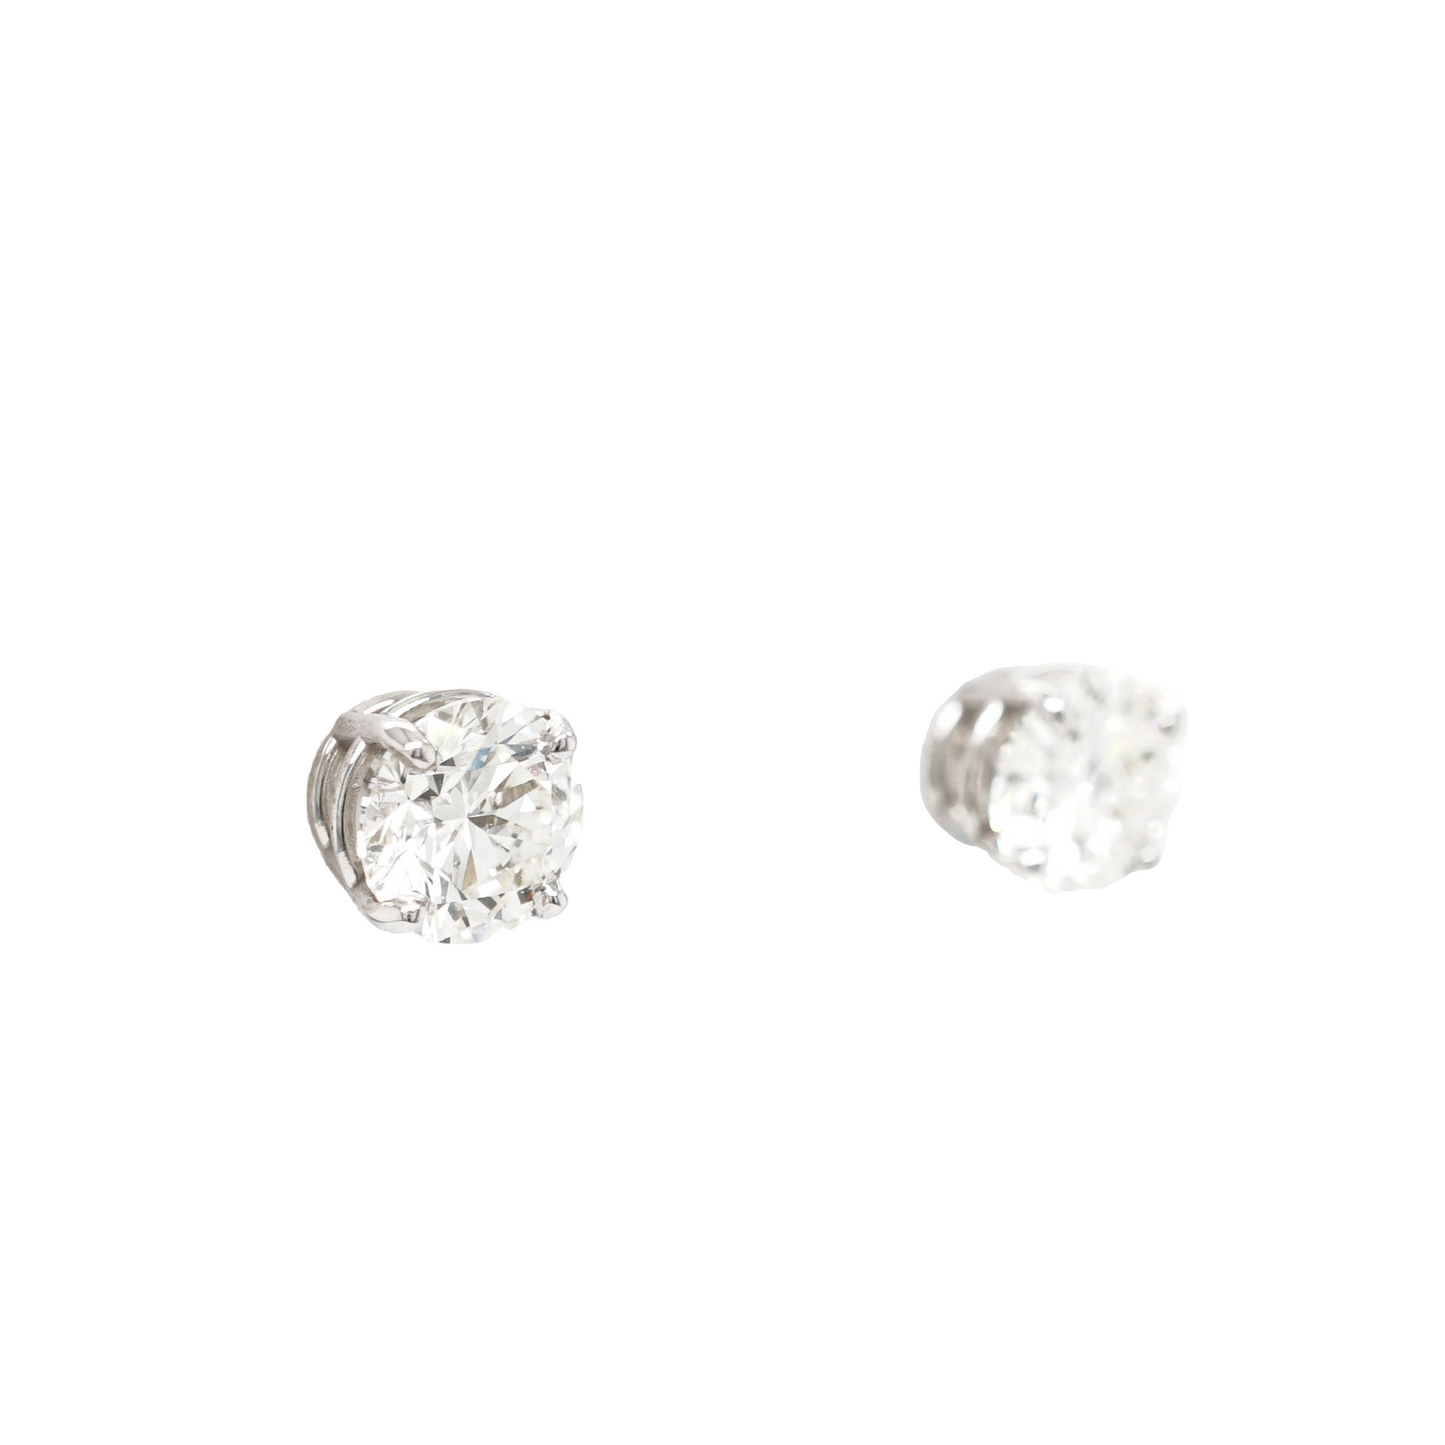 1.50 Carat Diamond Stud Earrings 14K White Gold